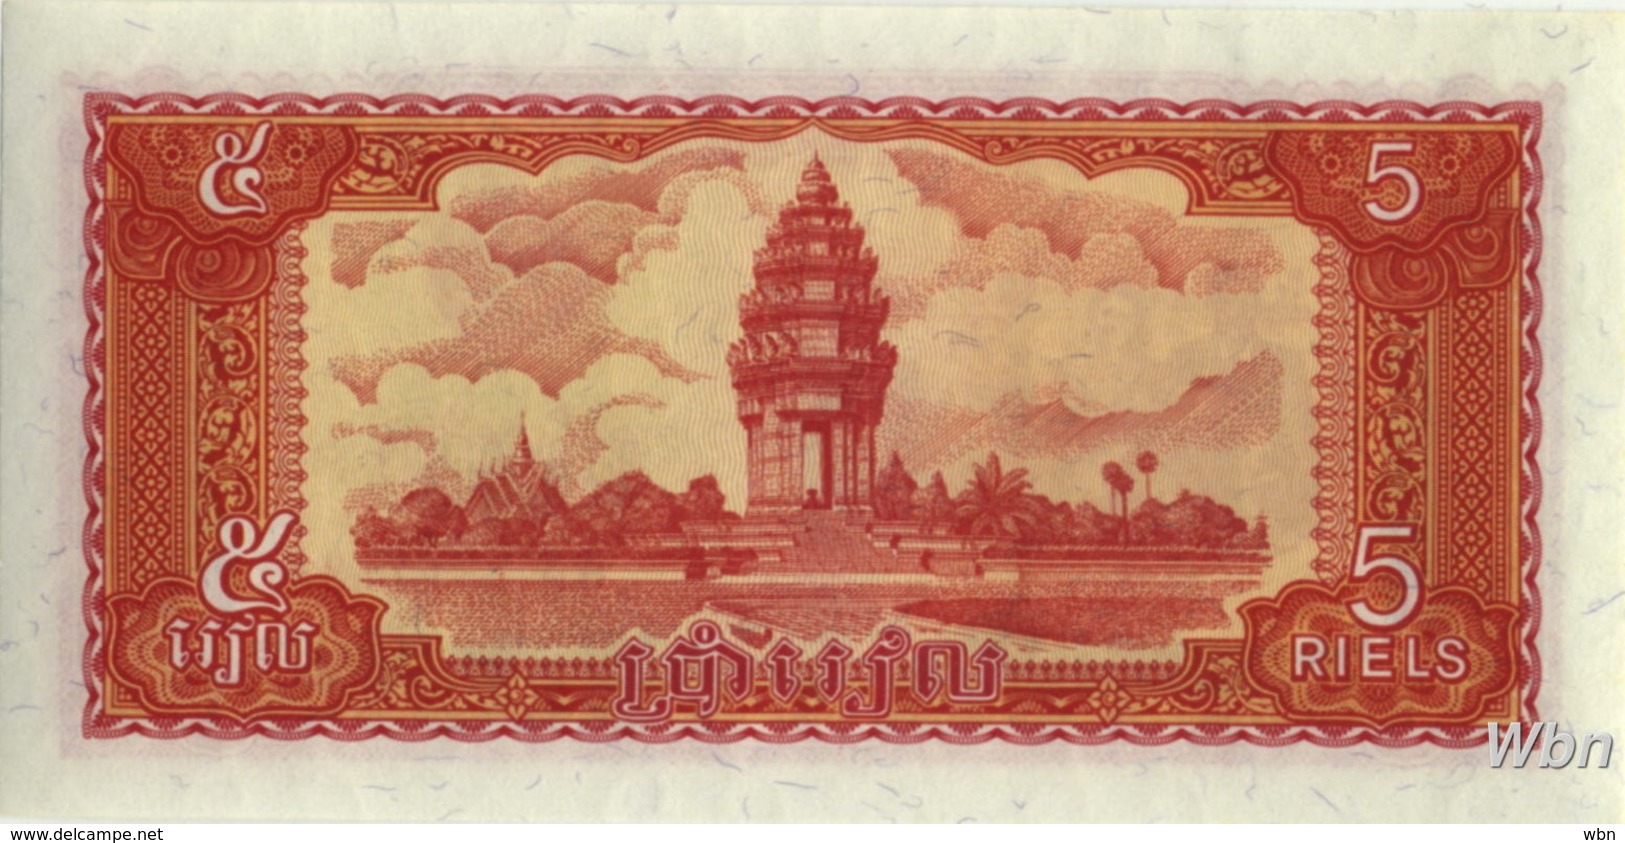 Cambodia 5 Riels (P33) 1987 -UNC- - Cambodia